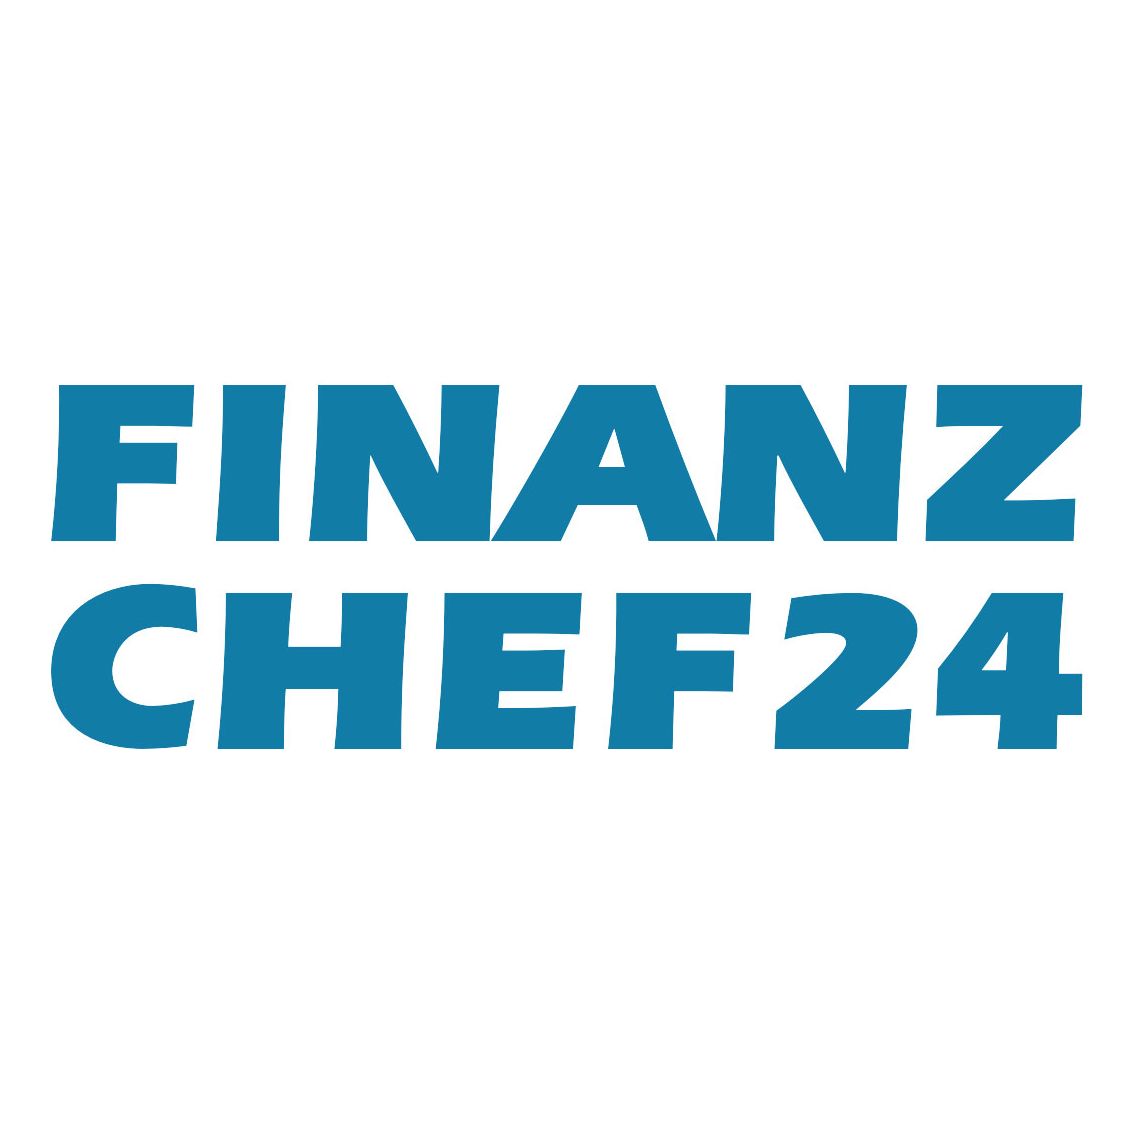 Finanzchef24 GmbH Jobs